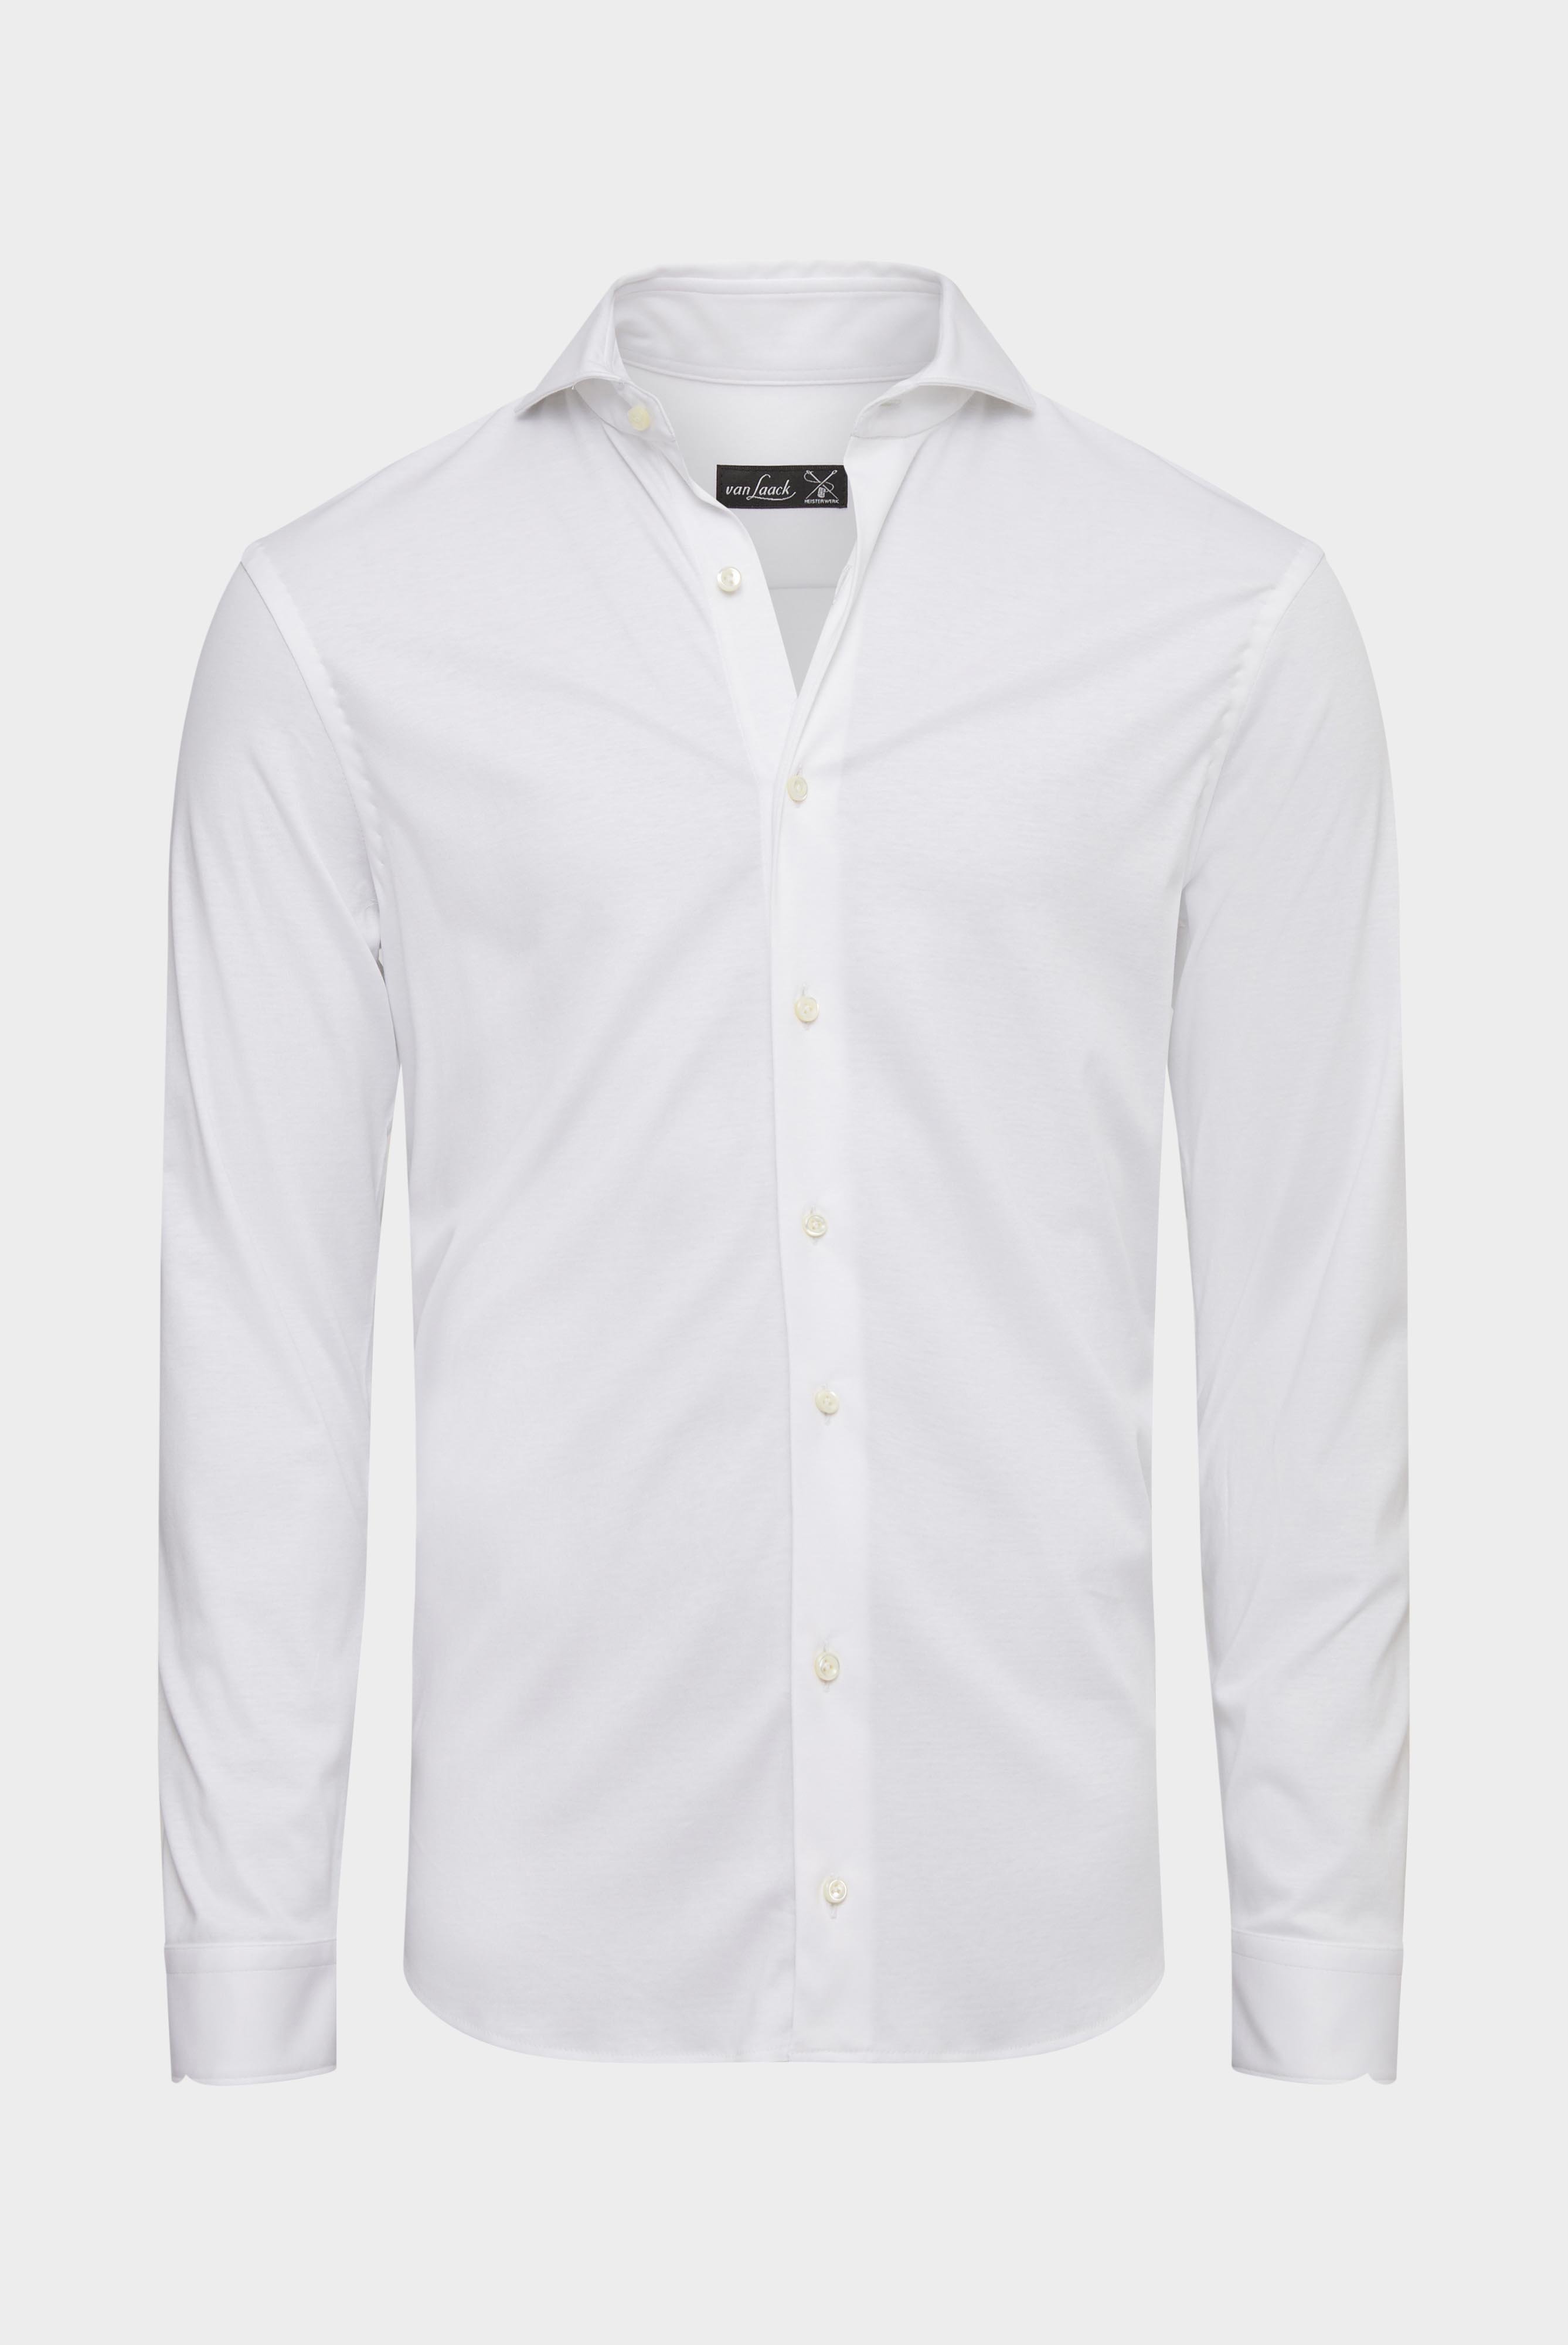 Jersey Hemden+Jersey Hemd aus Schweizer Baumwolle Slim Fit+20.1682.UC.180031.000.XXL